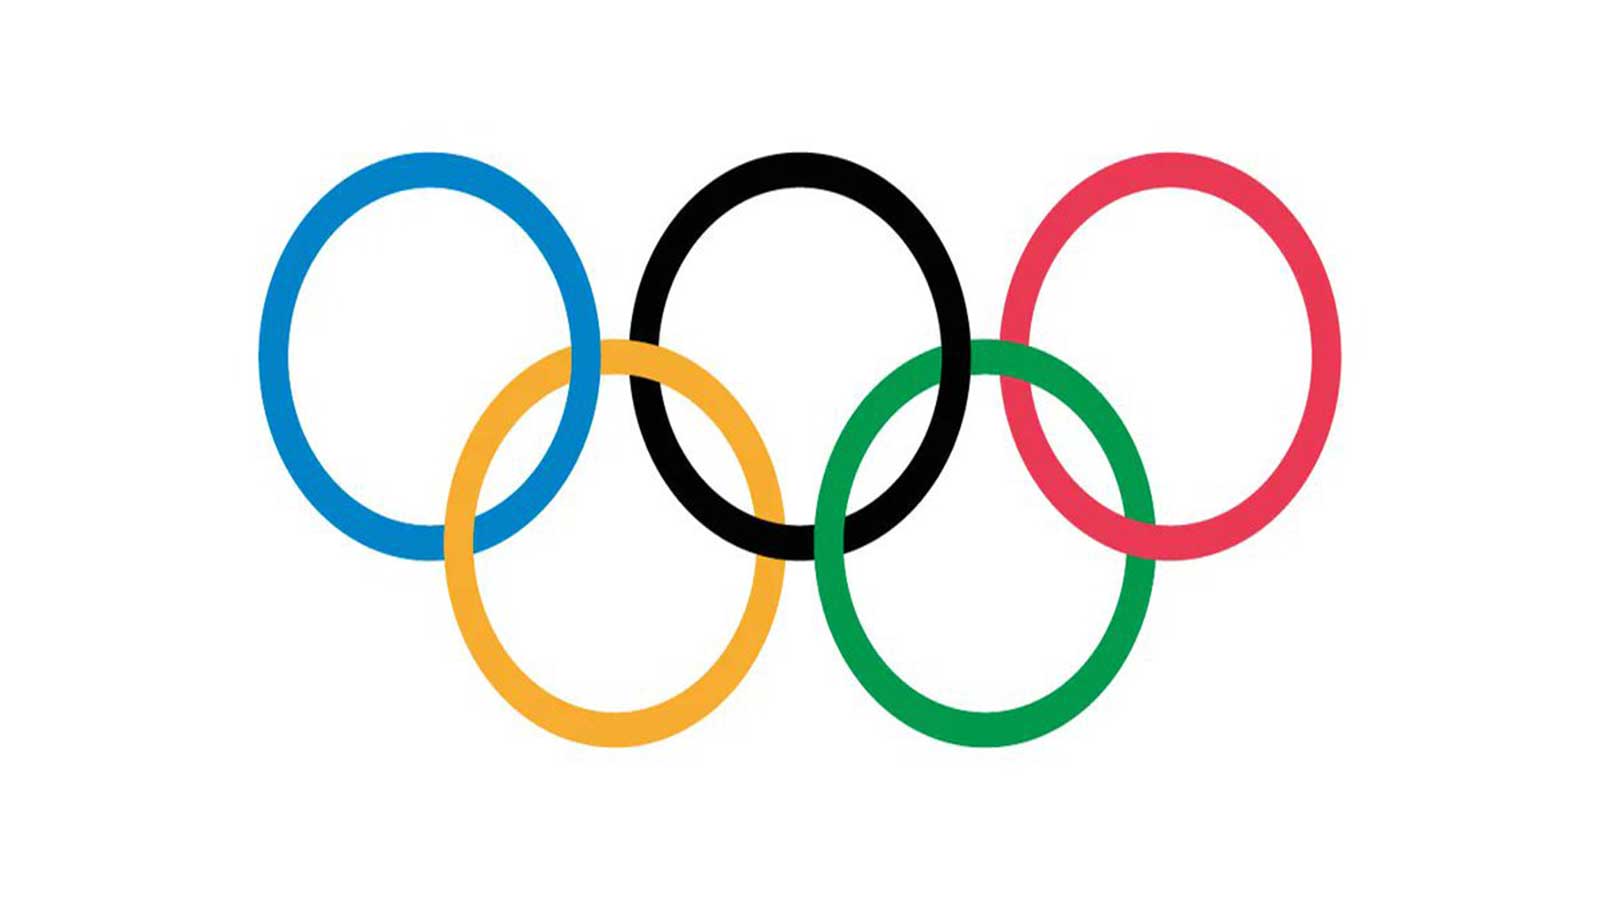 اللجنة الأولمبية الدولية واثقة من نجاح أولمبياد باريس 2024 رغم أعمال الشغب